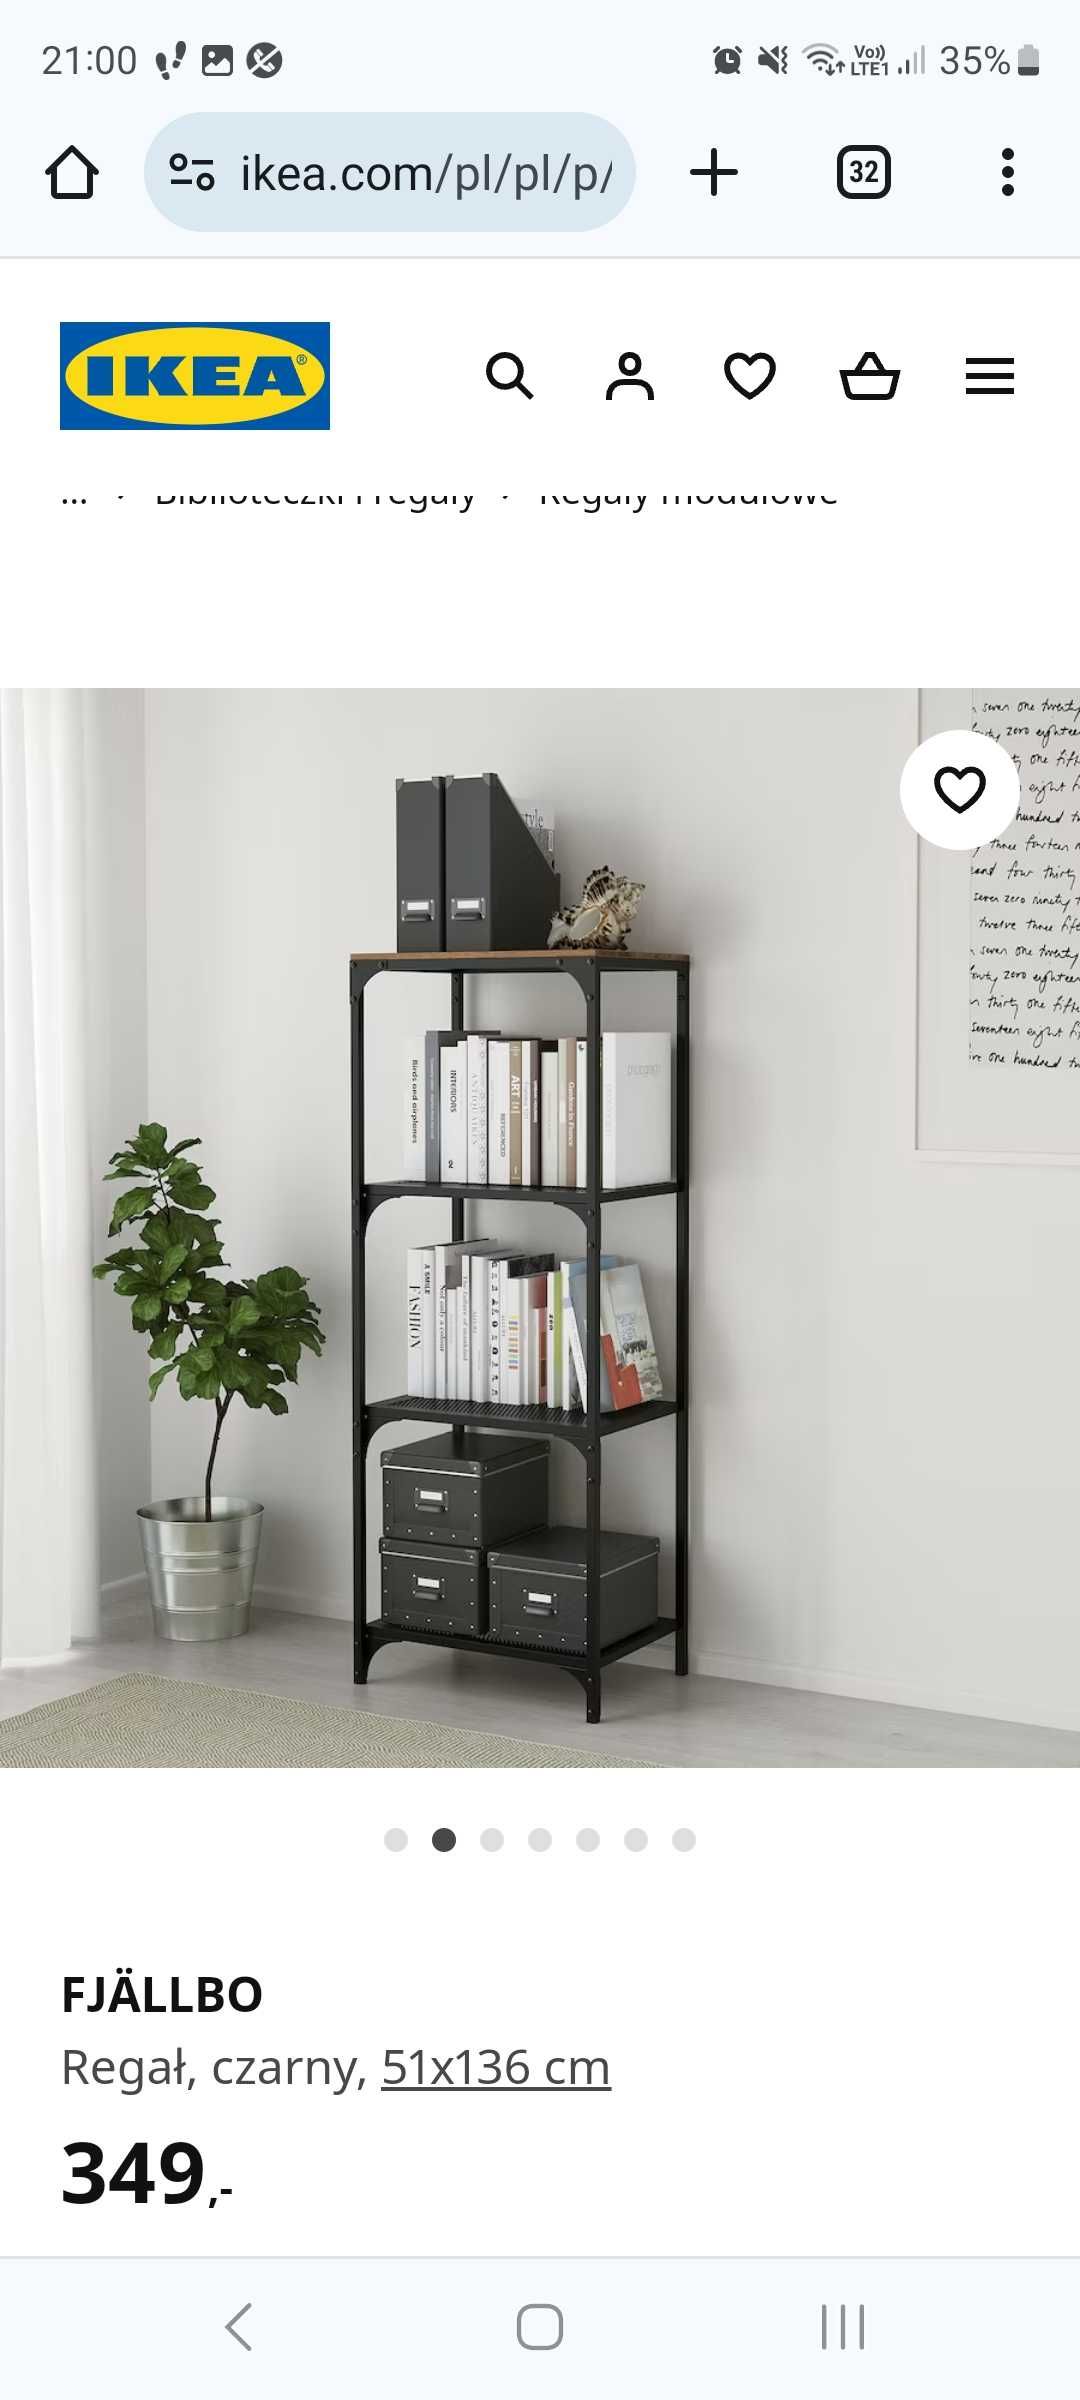 Piękny loftowy regał Fjallbo- IKEA